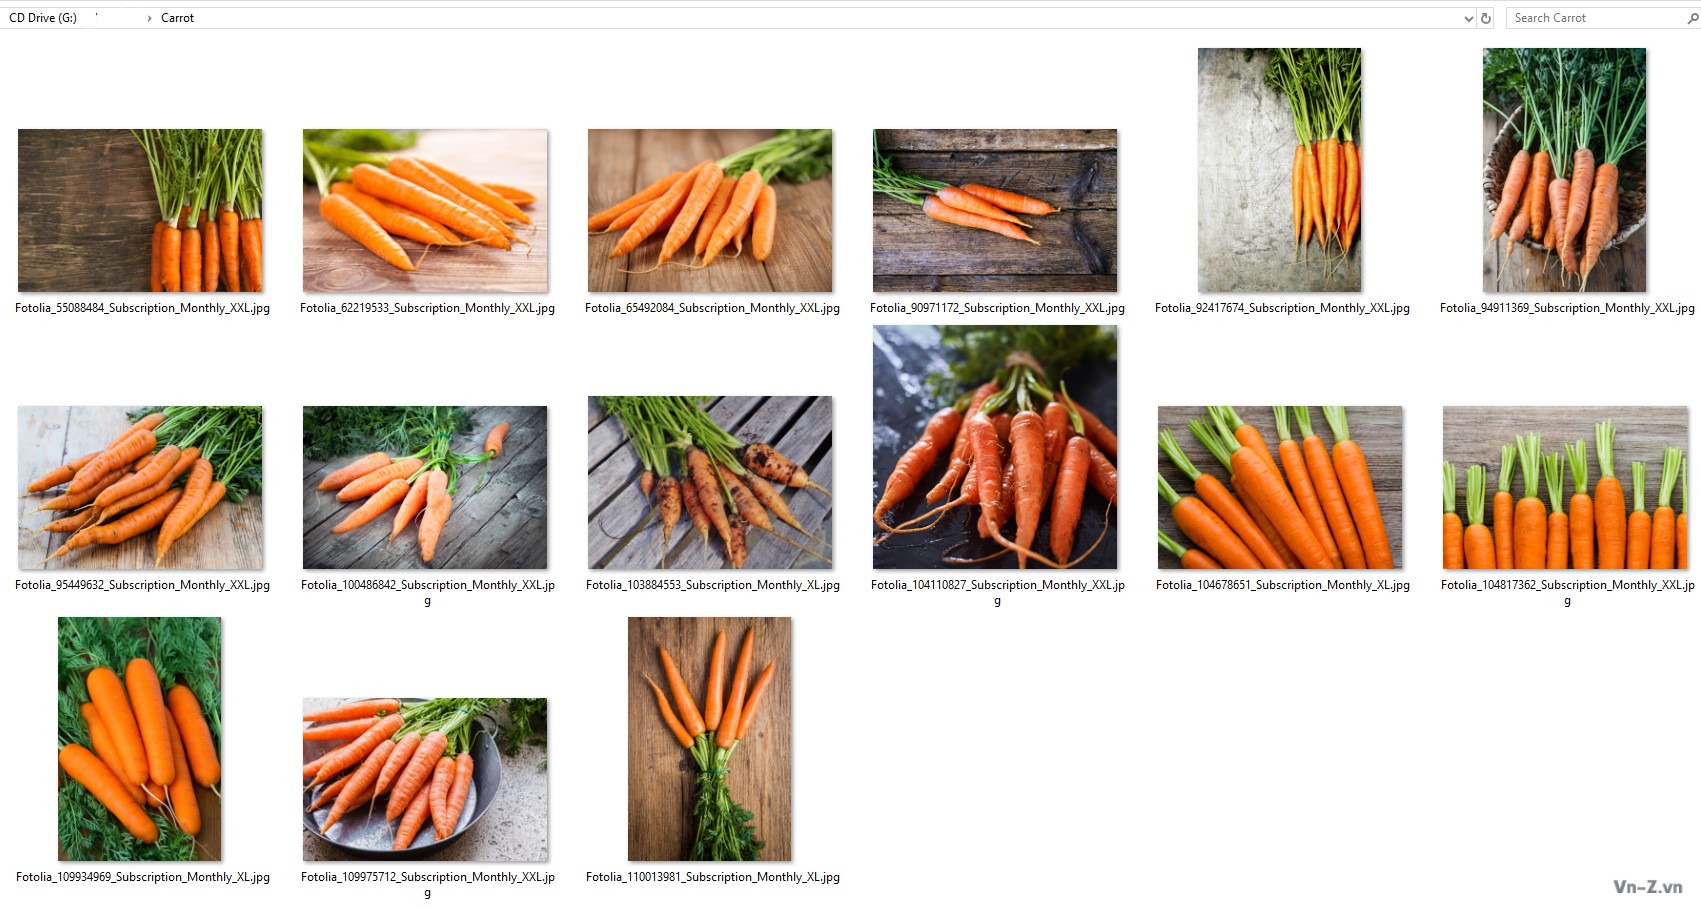 045-Carrot.jpg